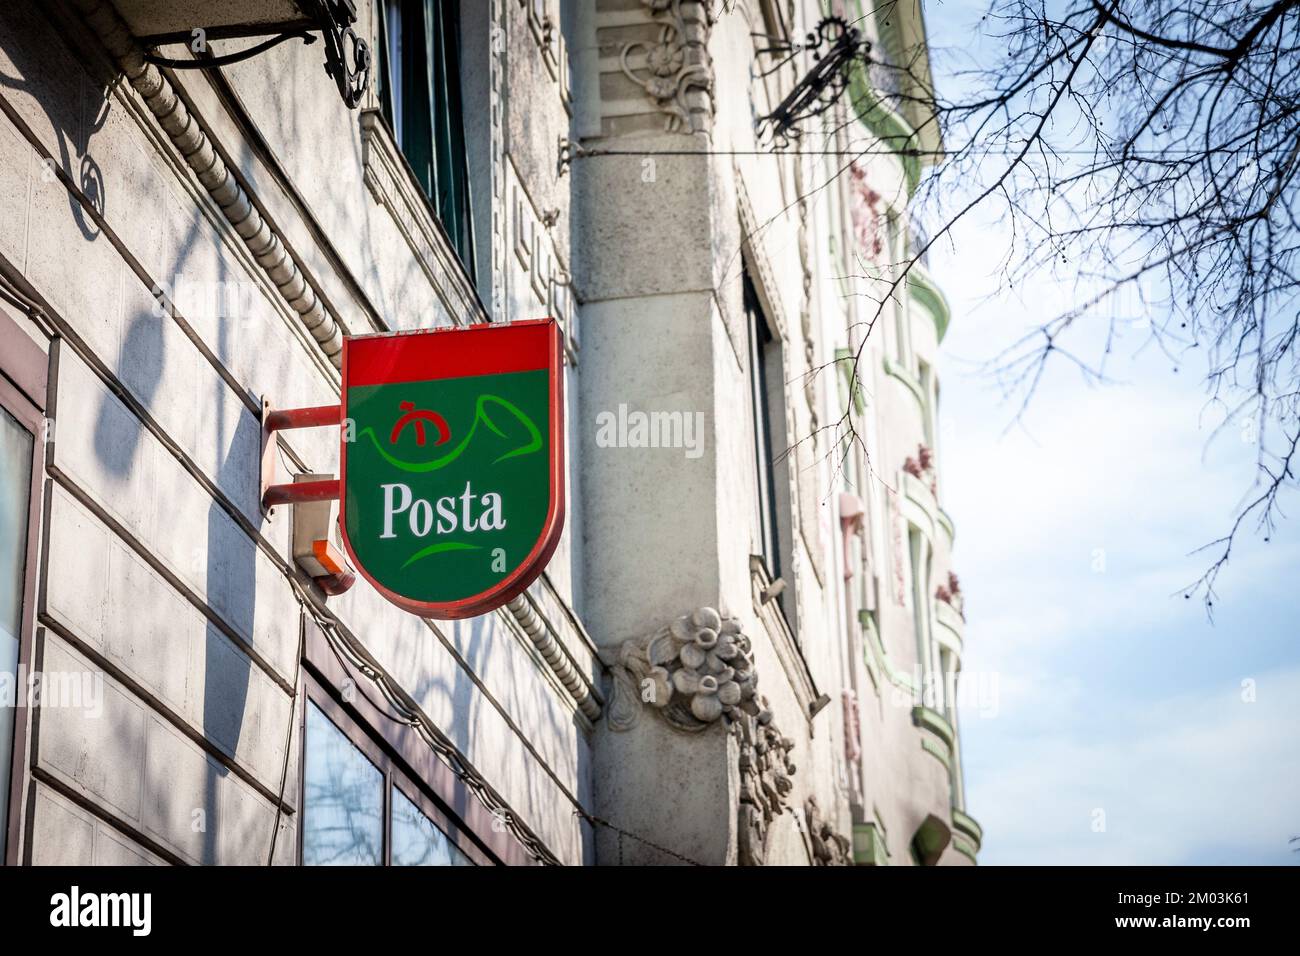 Imagen de un cartel con el logotipo de Magyar Posta en una de sus oficinas de correos en Budapest, Hungría. Magyar Posta Zrt. O Hungarian Post es el postal A. Foto de stock